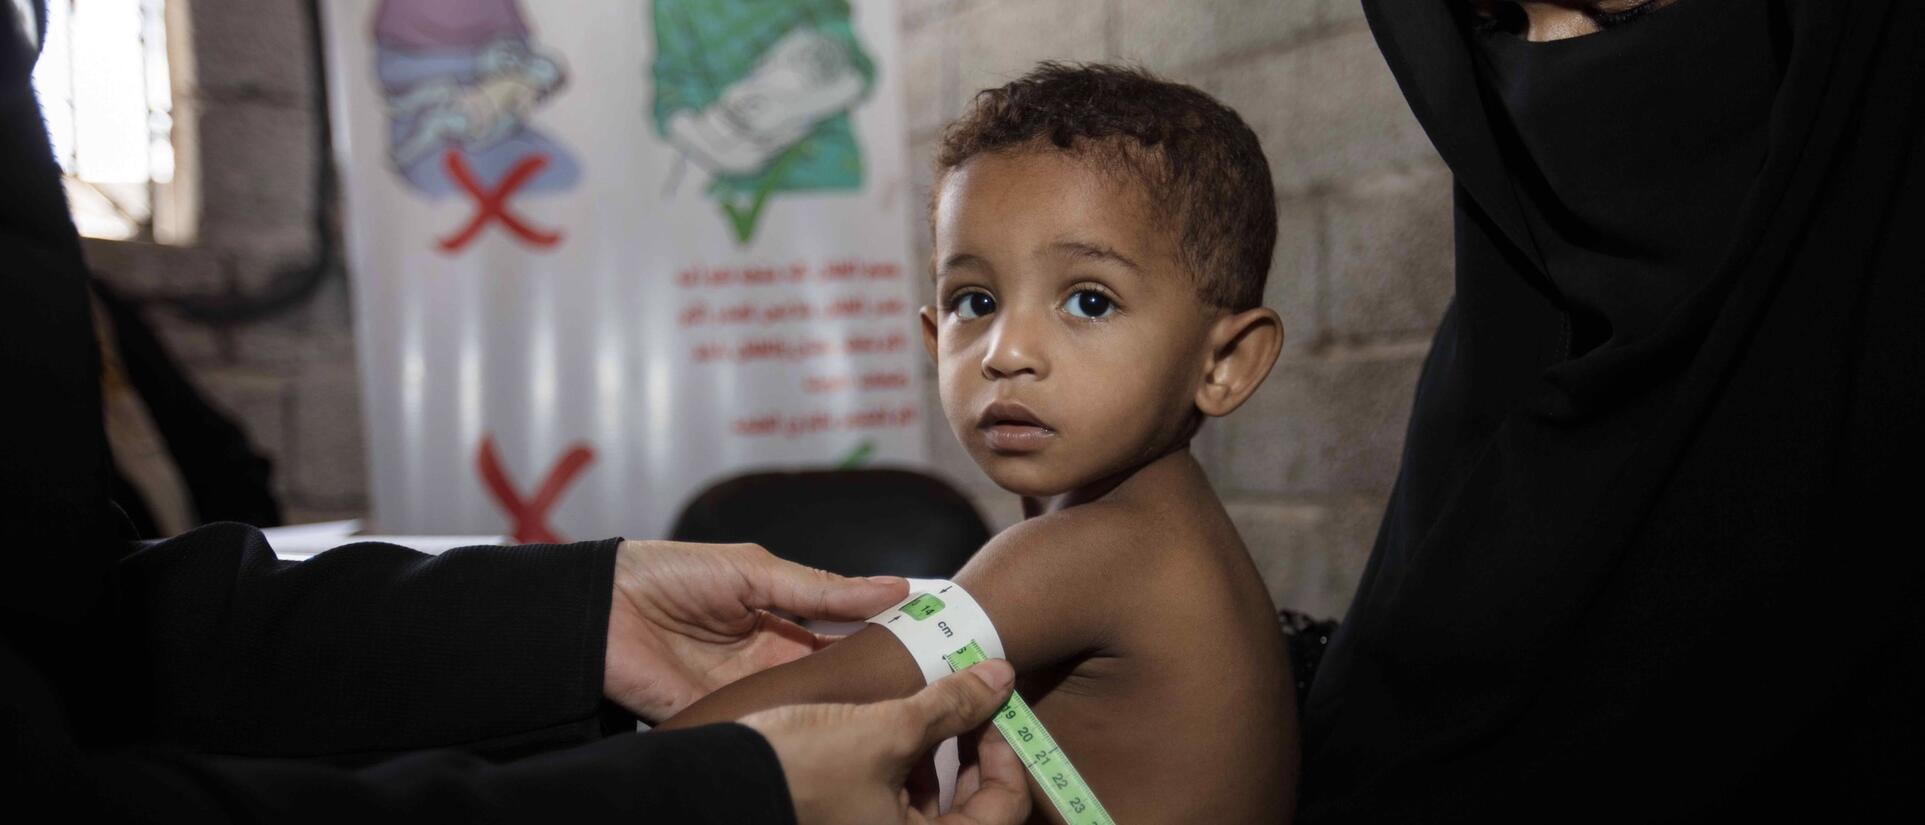 Ein Junge wird in einer mobilen IRC-Klinik in Jemen behandelt